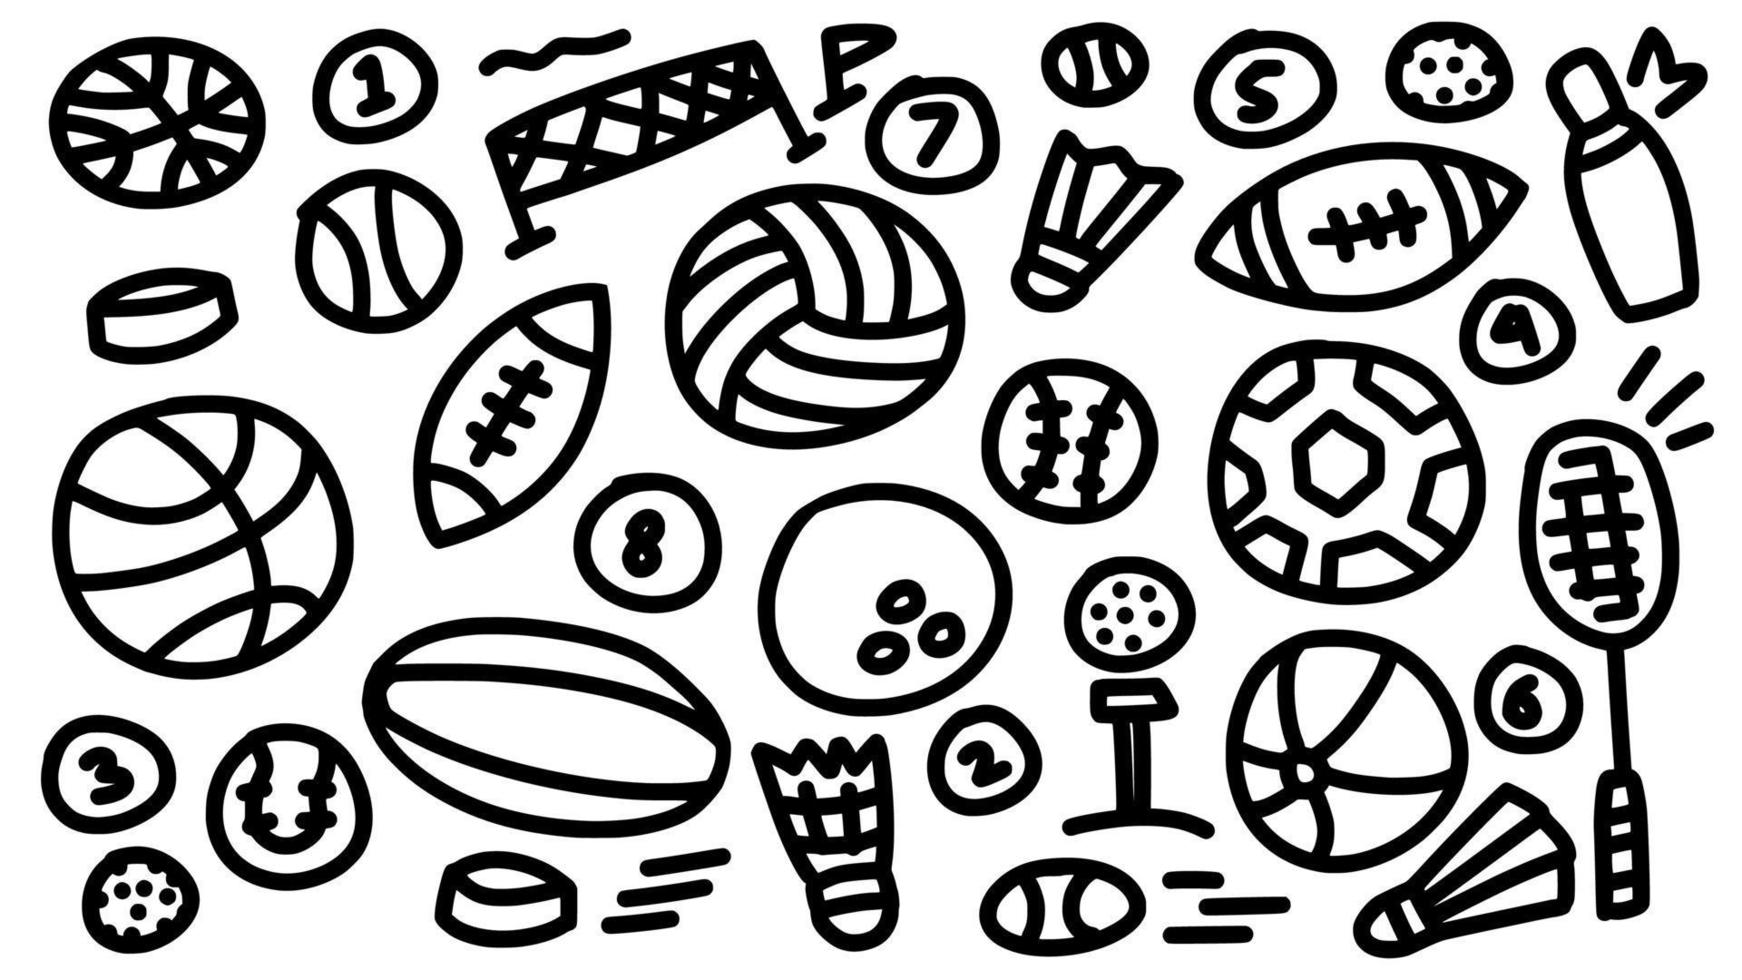 ball sportausrüstung sammlung icon set handgezeichnete doodle umrisse vektorvorlage illustration sammlung für sporterziehung und malbuch vektor